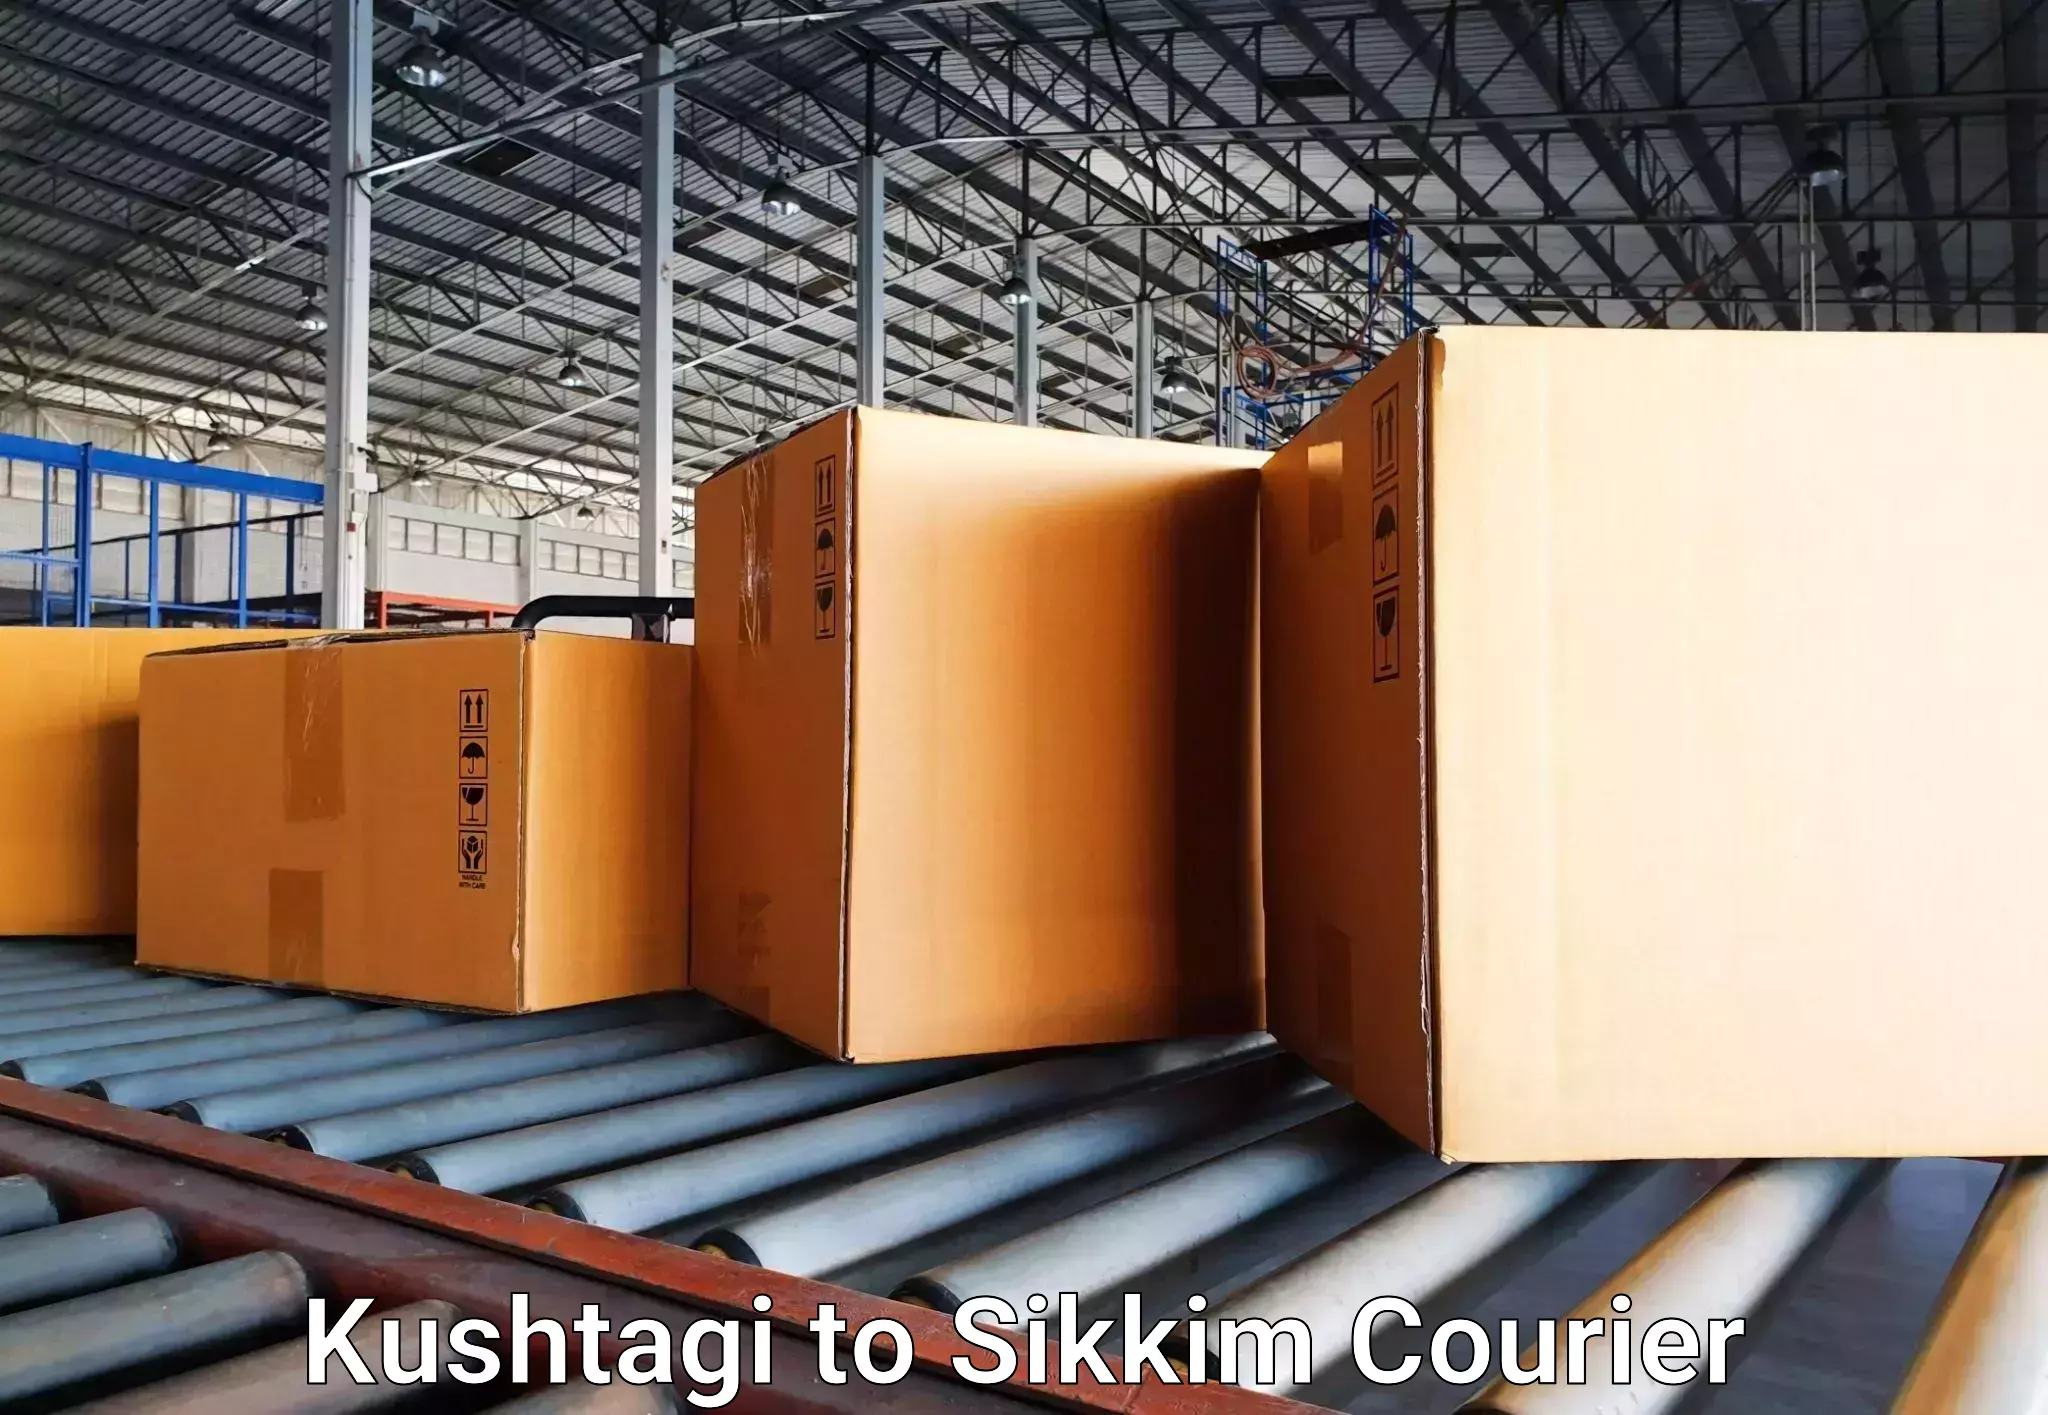 Luggage delivery network Kushtagi to Sikkim